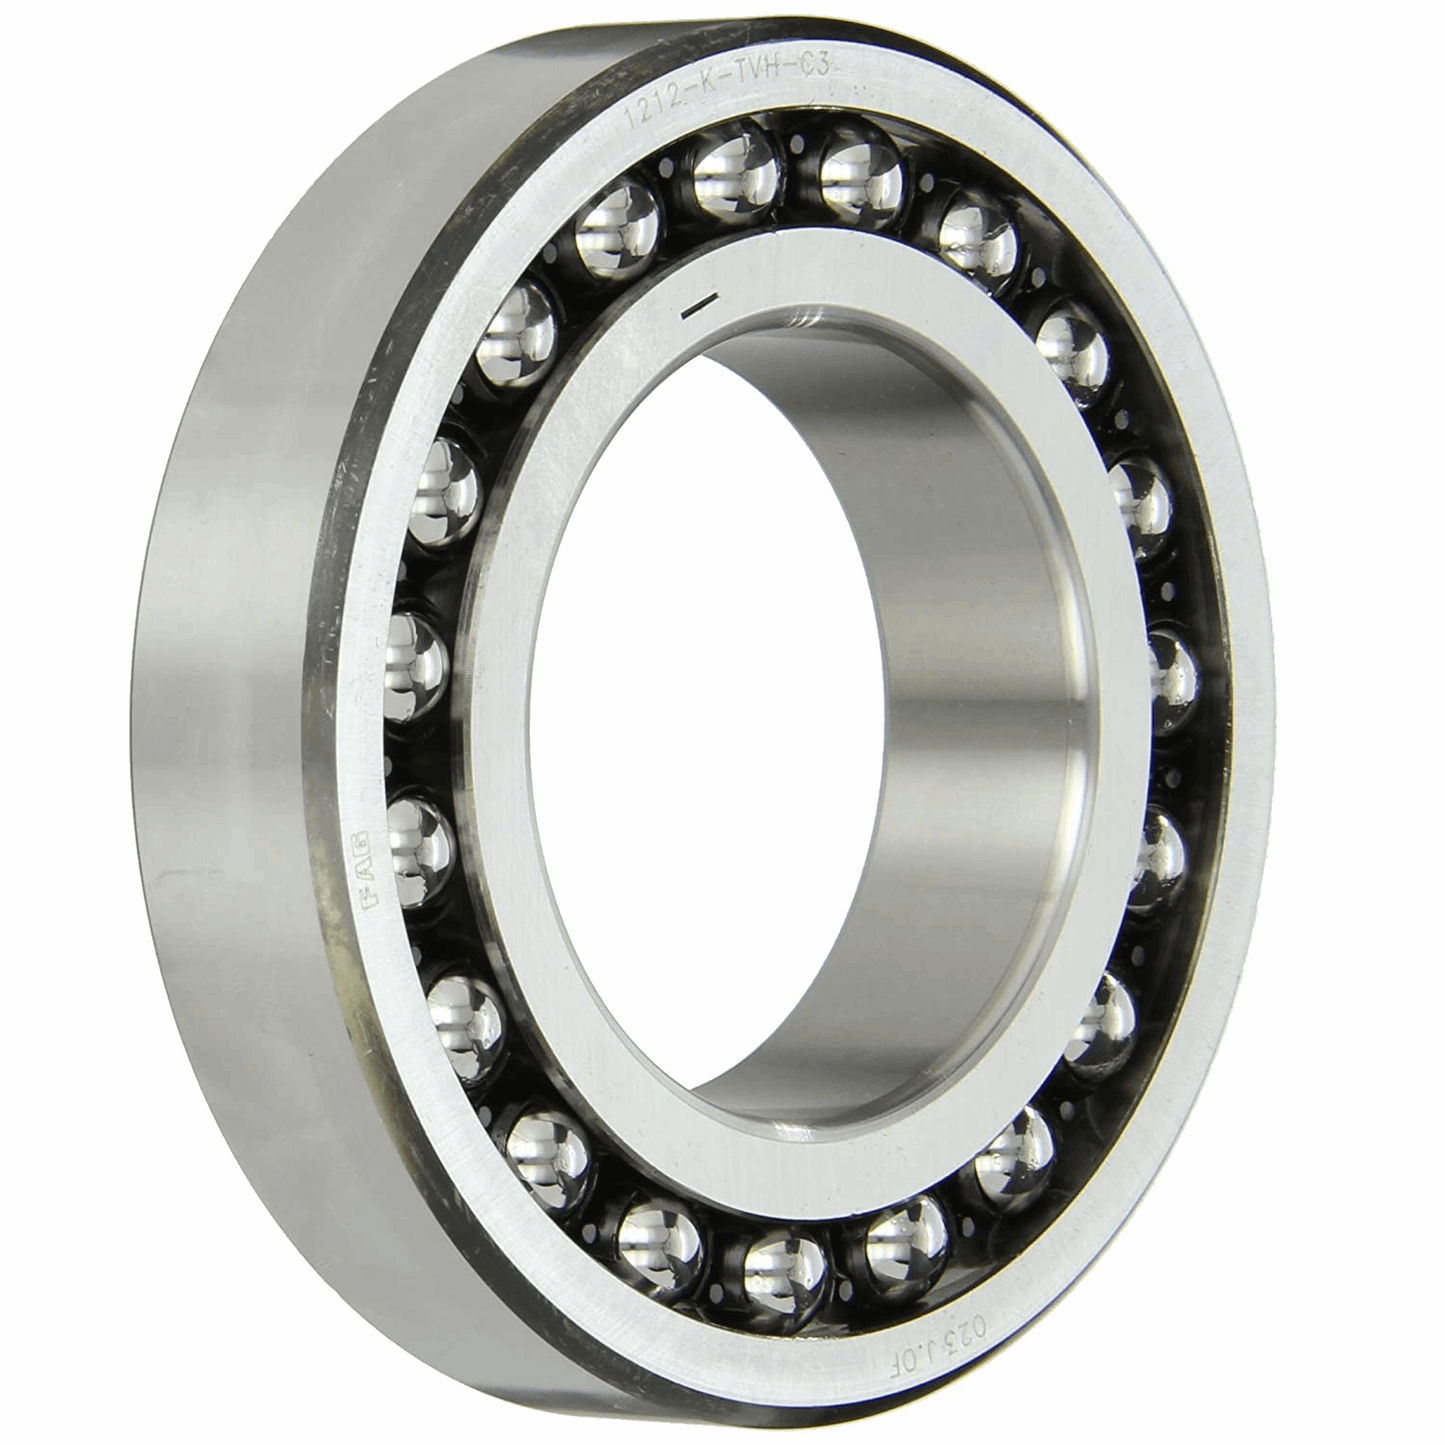 65x120x31 2213 spherical ball-bearing radial bearing